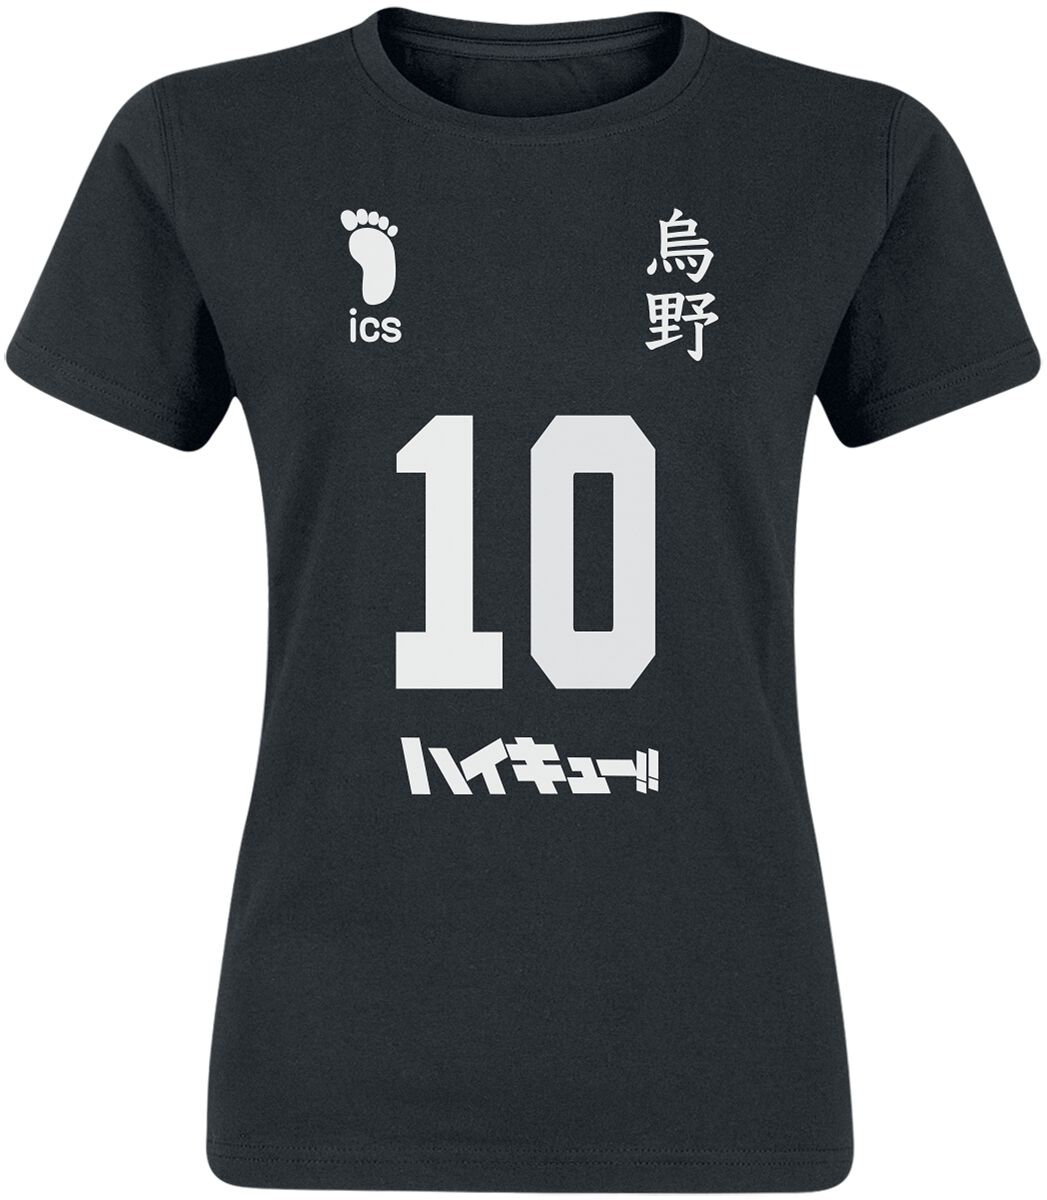 T-Shirt Manches courtes de Haikyuu - Number 10 - S à XXL - pour Femme - noir